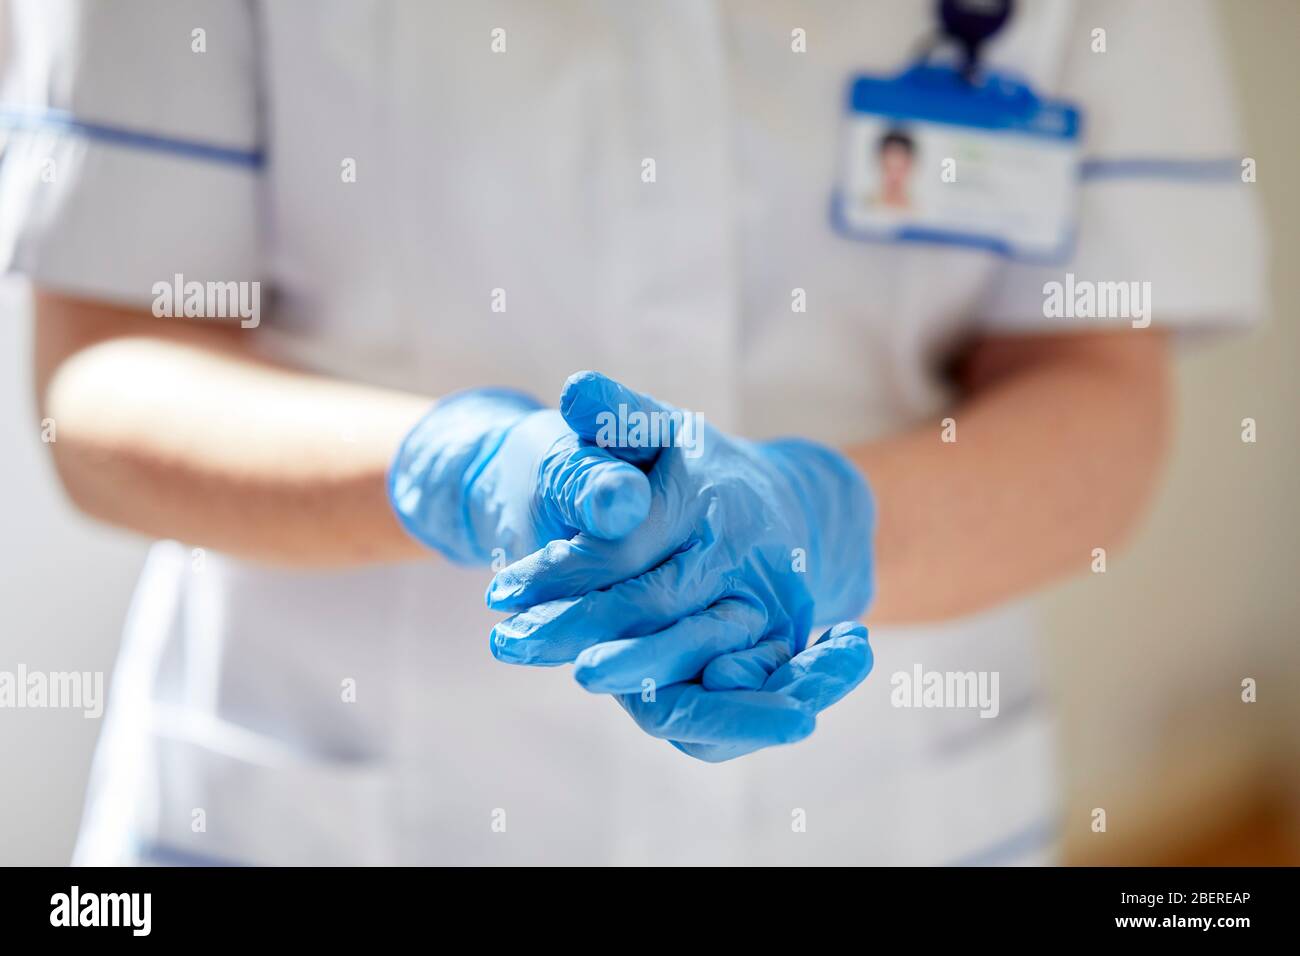 Nurse putting on vinyl gloves Stock Photo